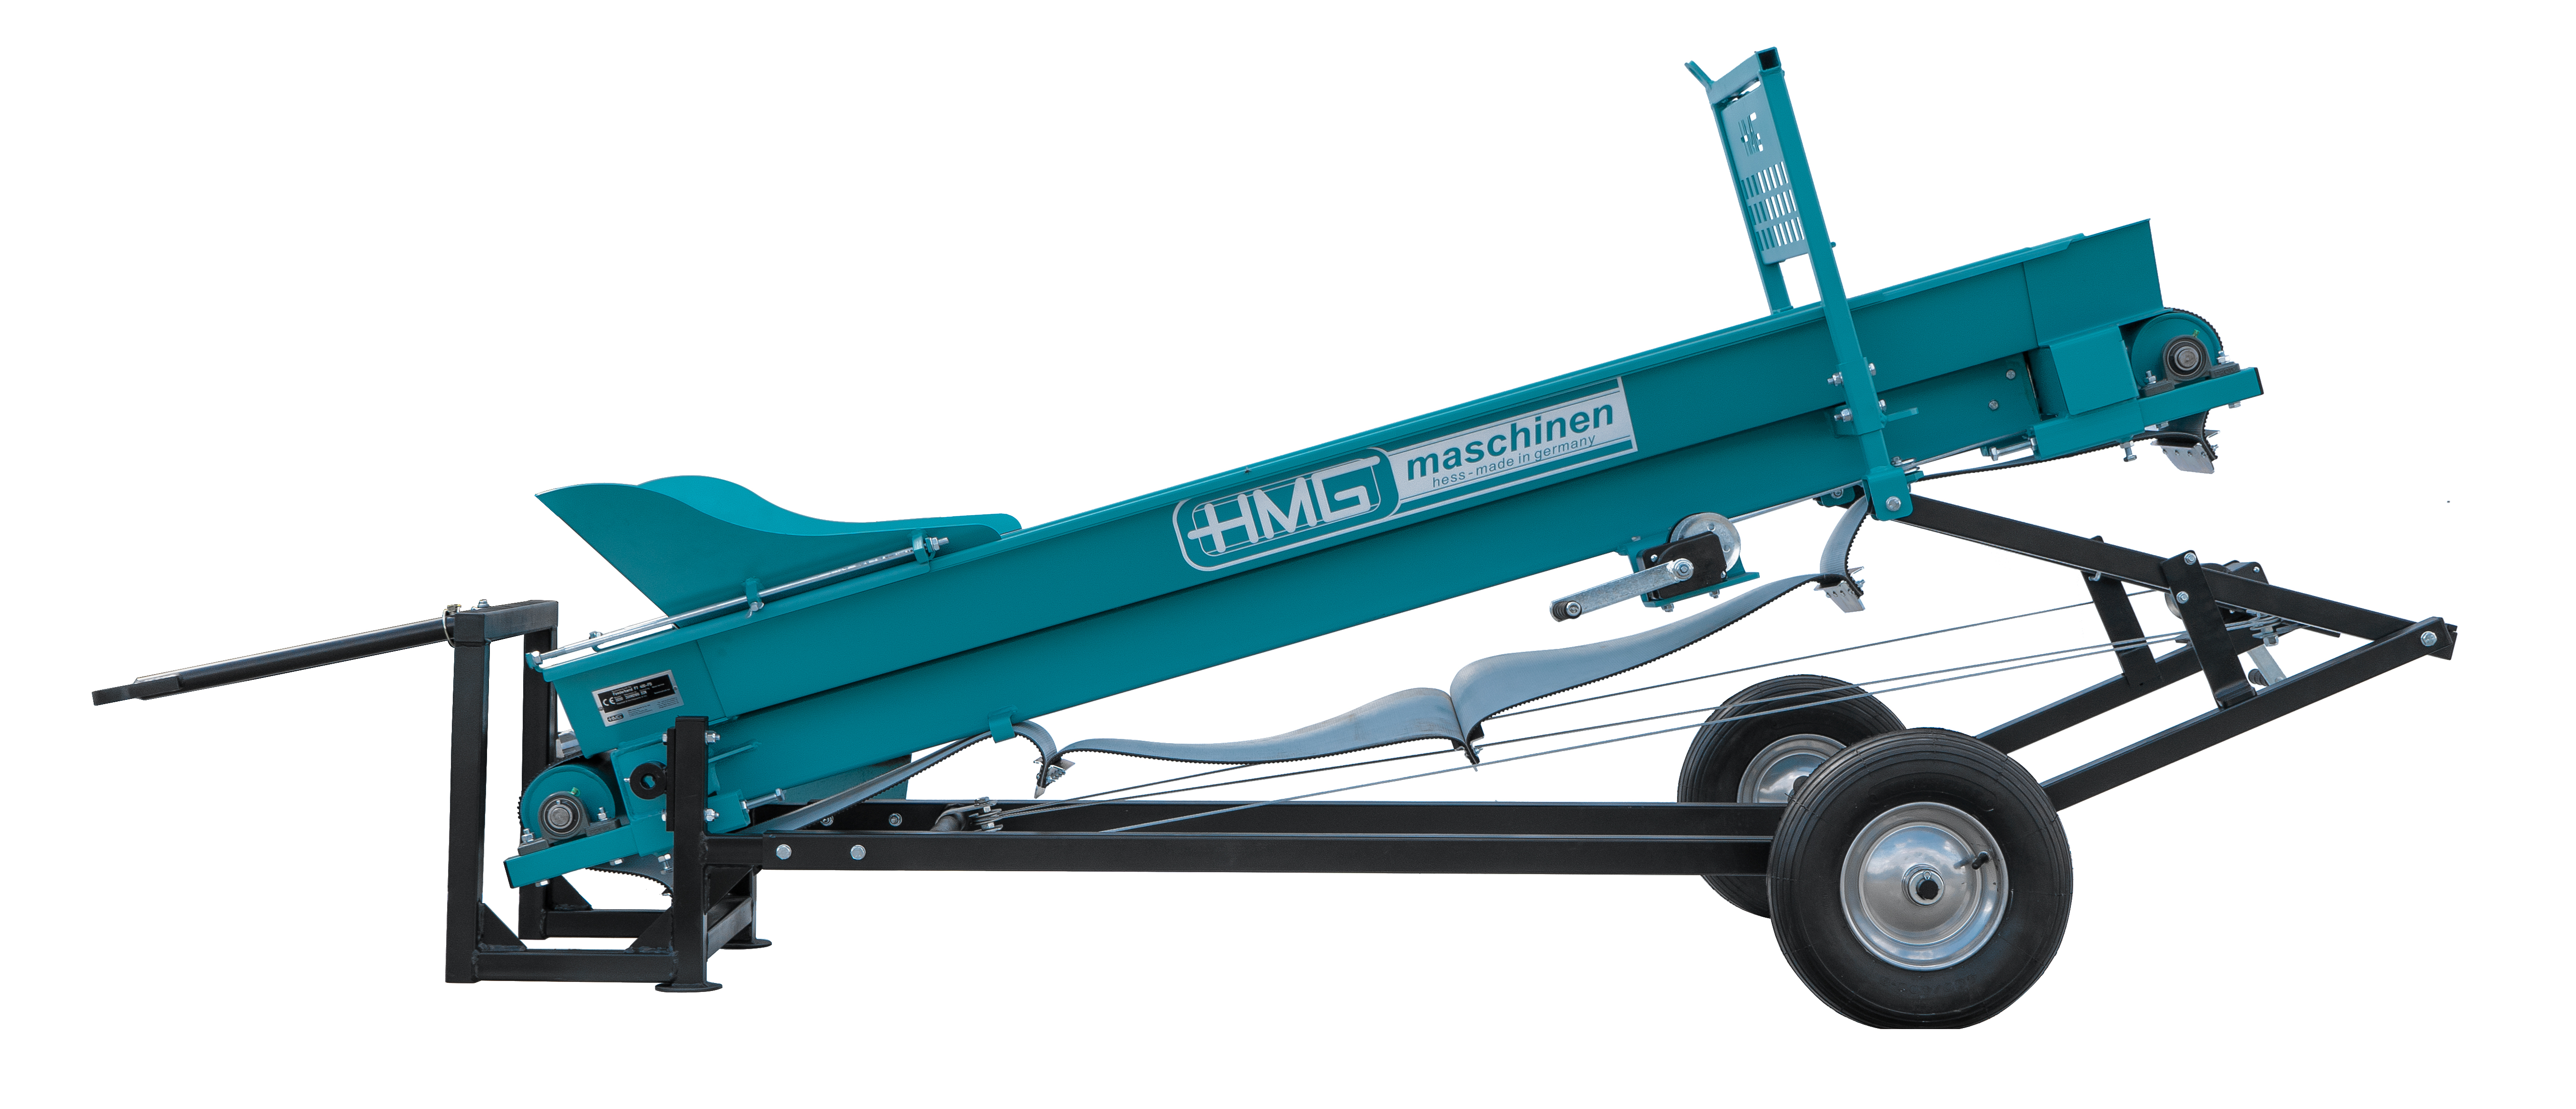 HMG Förderband. Mit wartungsfreundlichen Handseilwinden wird das Förderband aus seiner kompakten Transportstellung in Arbeitsstellung ausgefahren und in gewünschte Auswurfhöhe eingestellt.